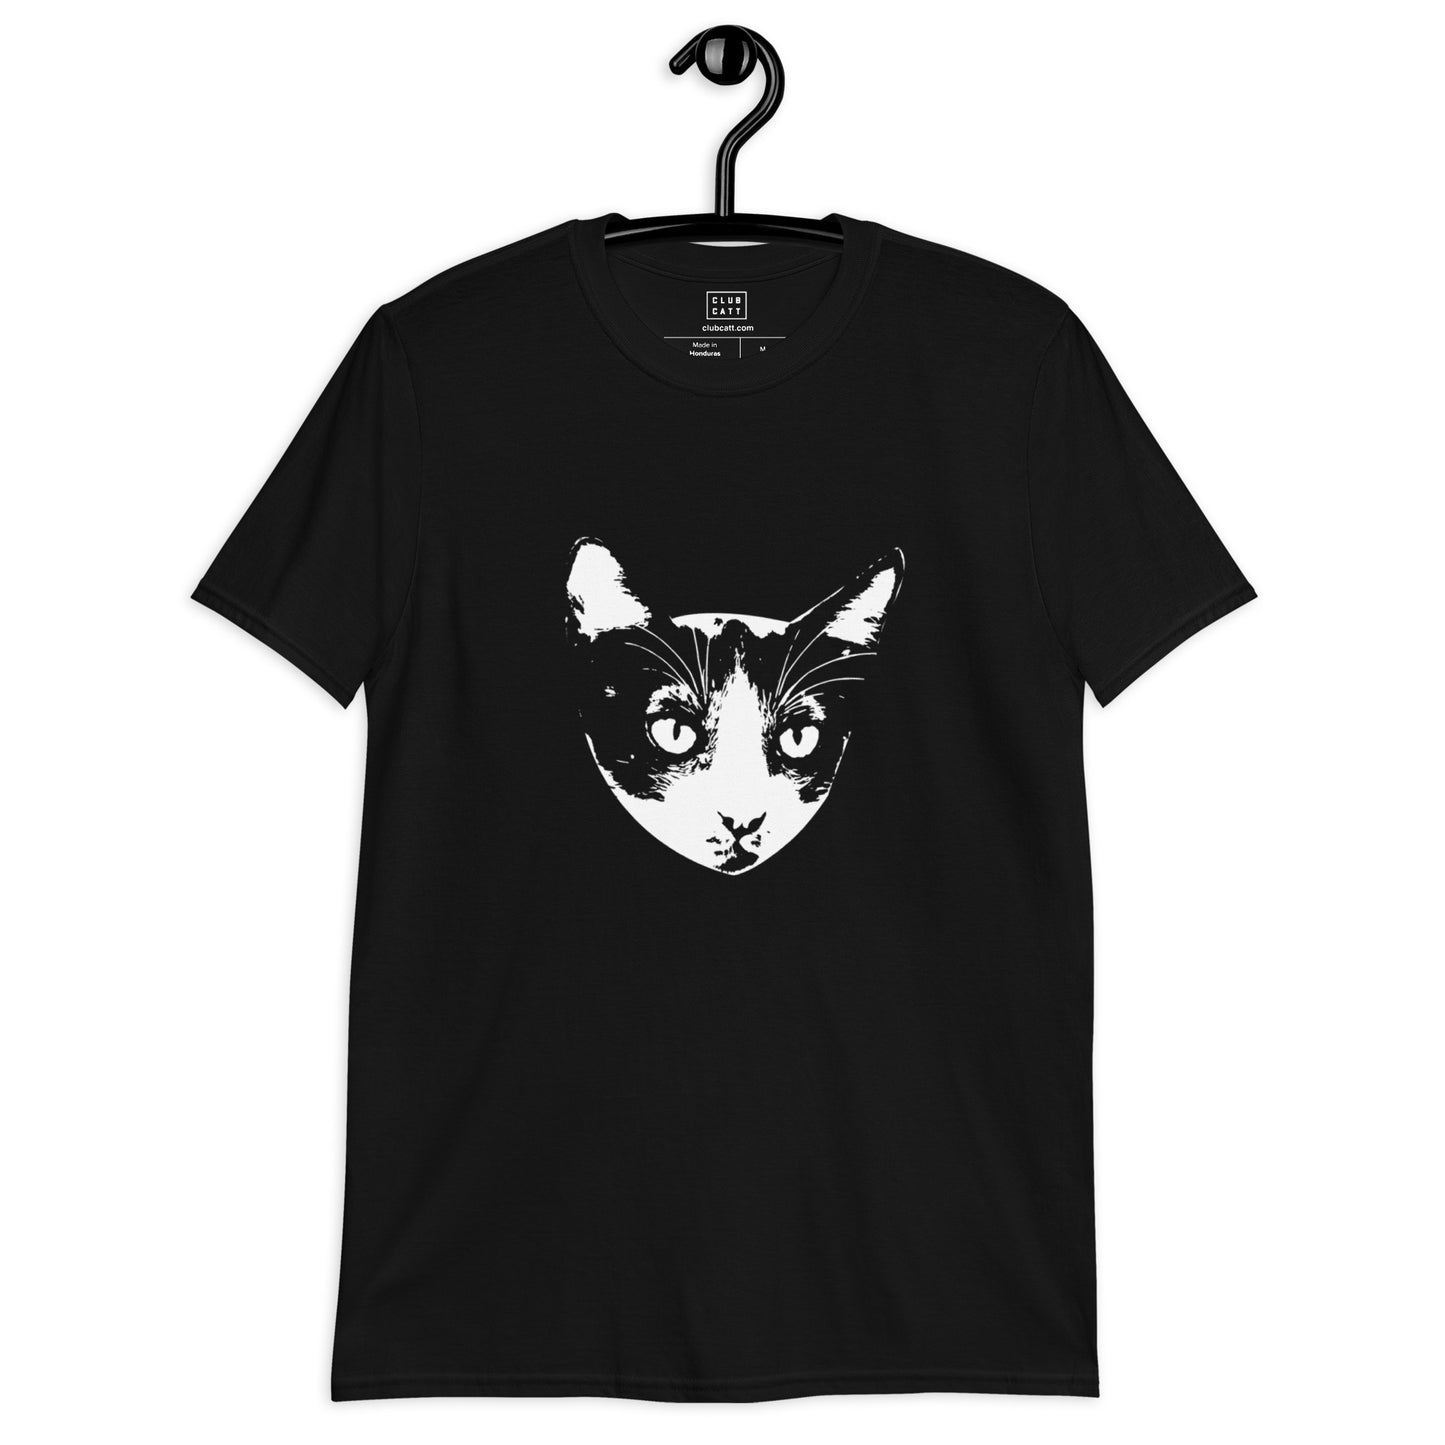 HIDALGO Cat on T-Shirt